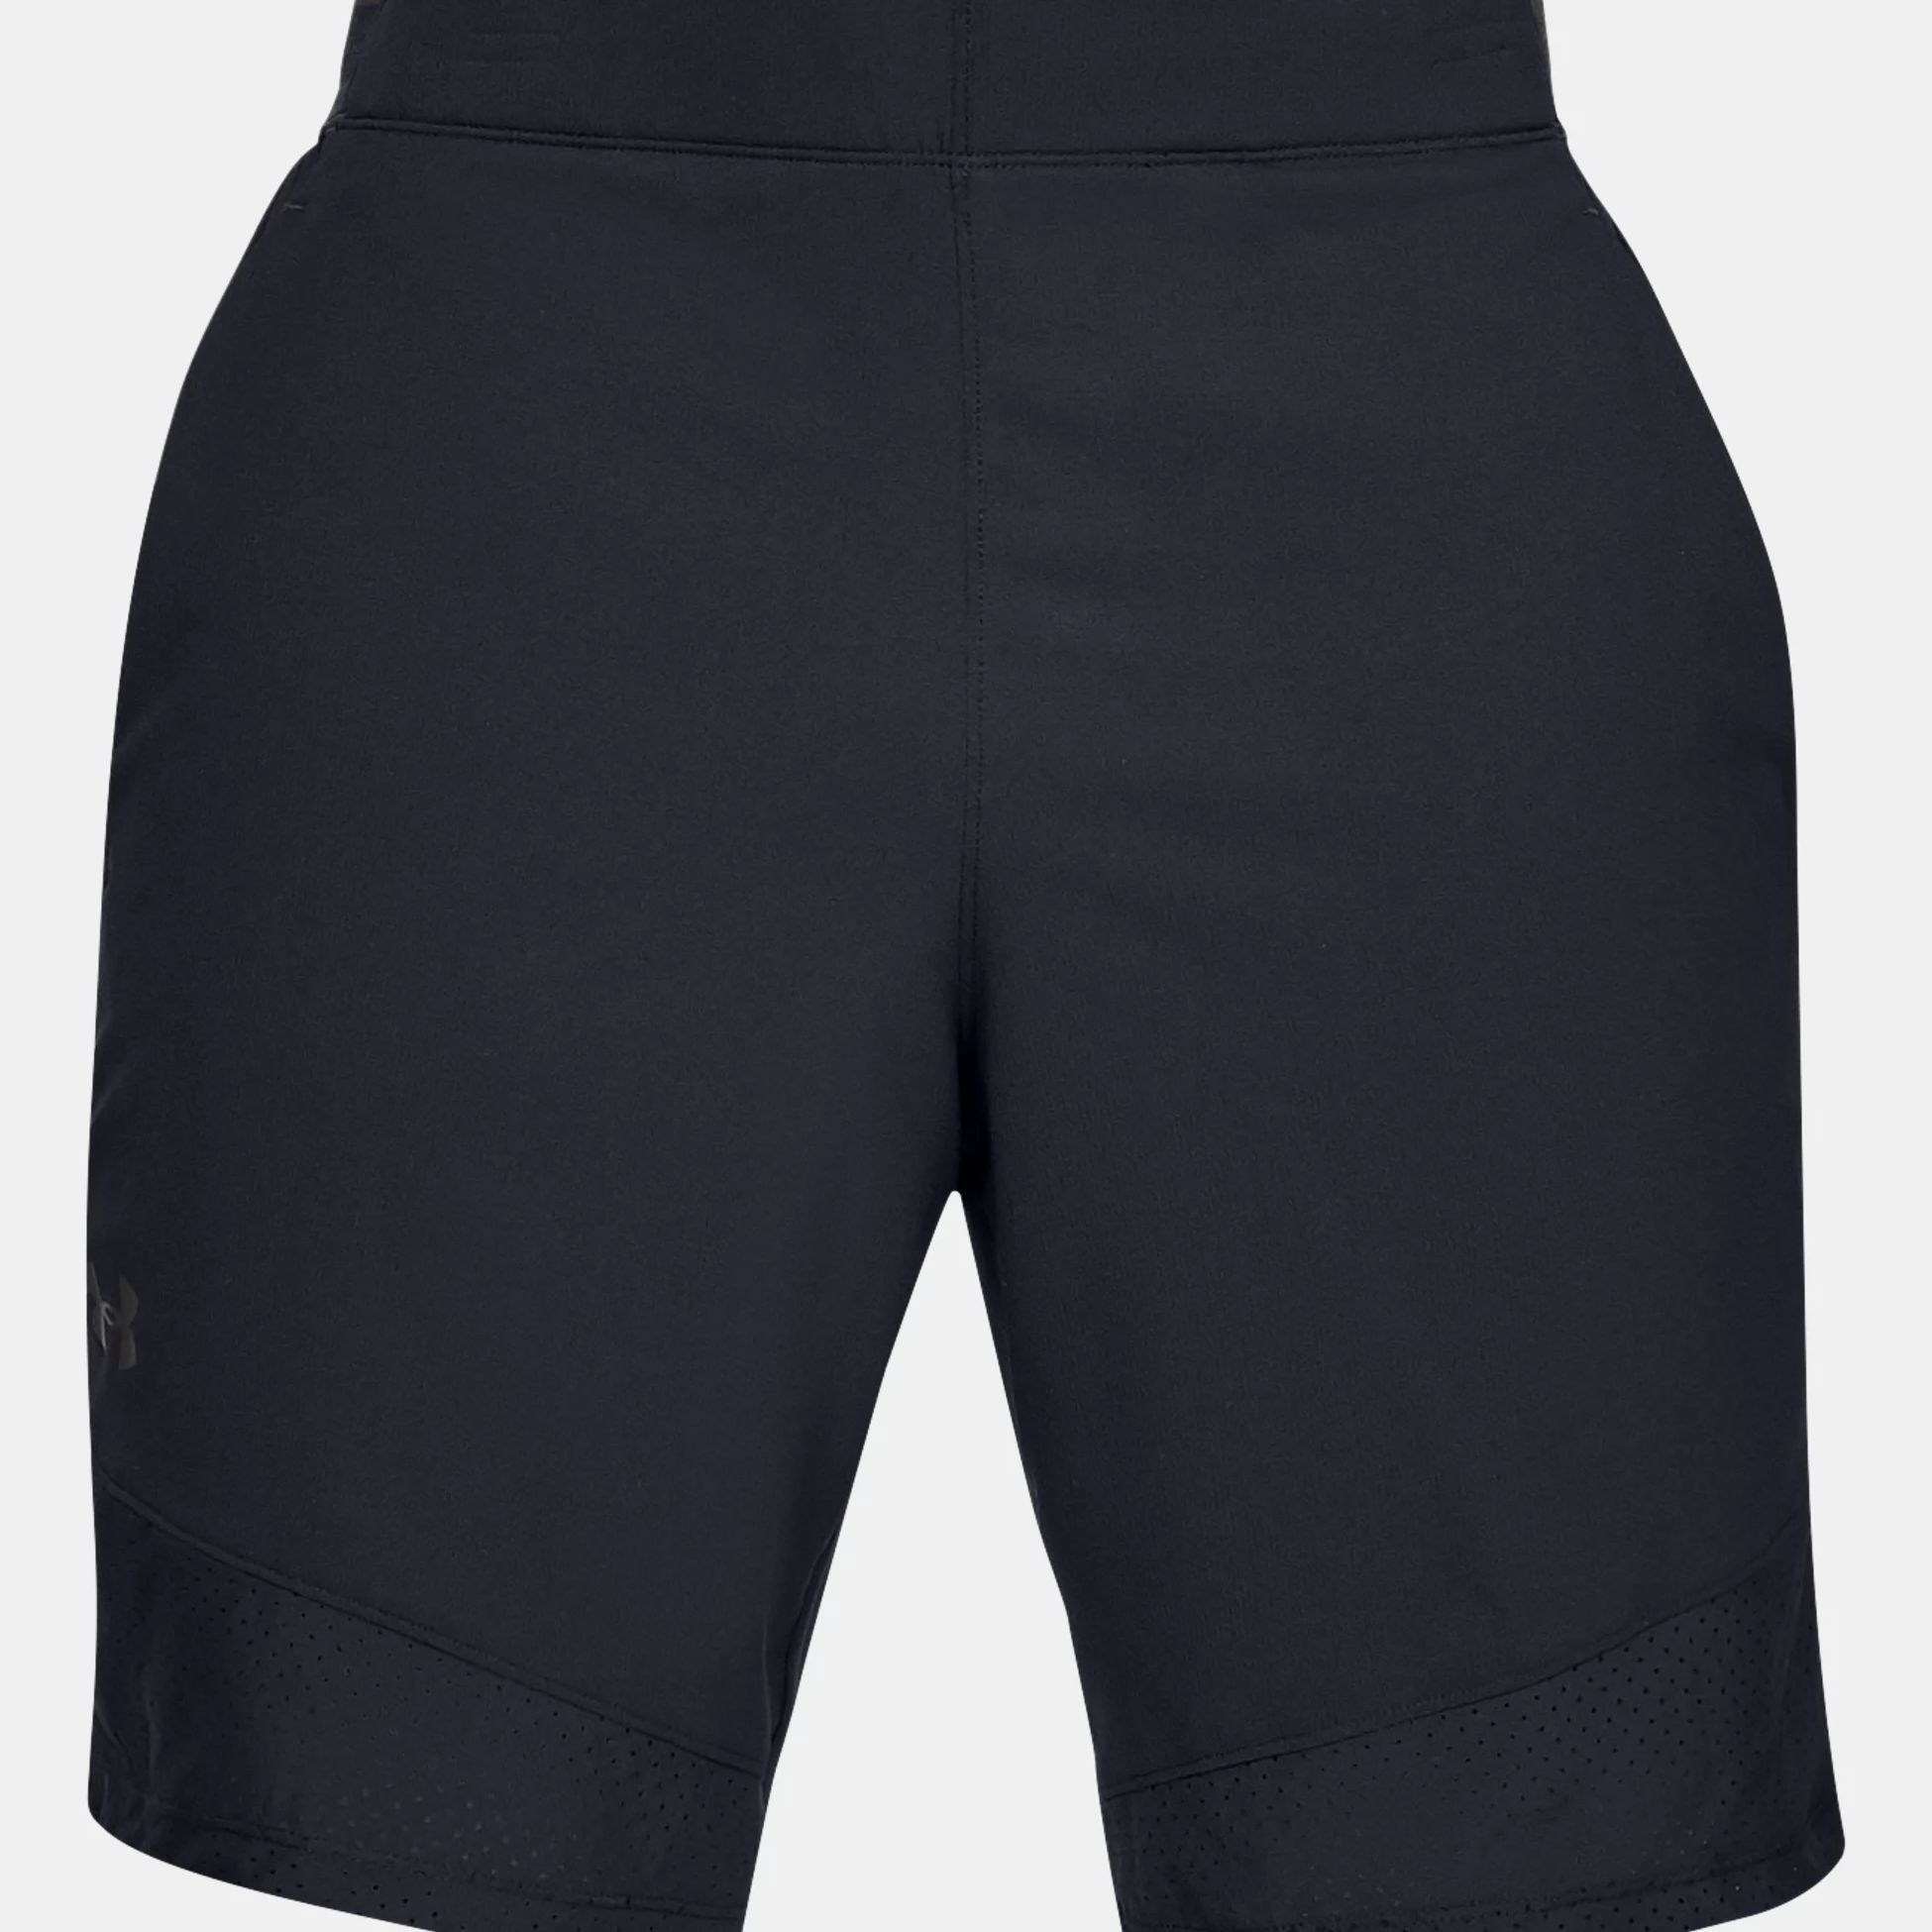 Shorts -  under armour UA Vanish Woven Shorts